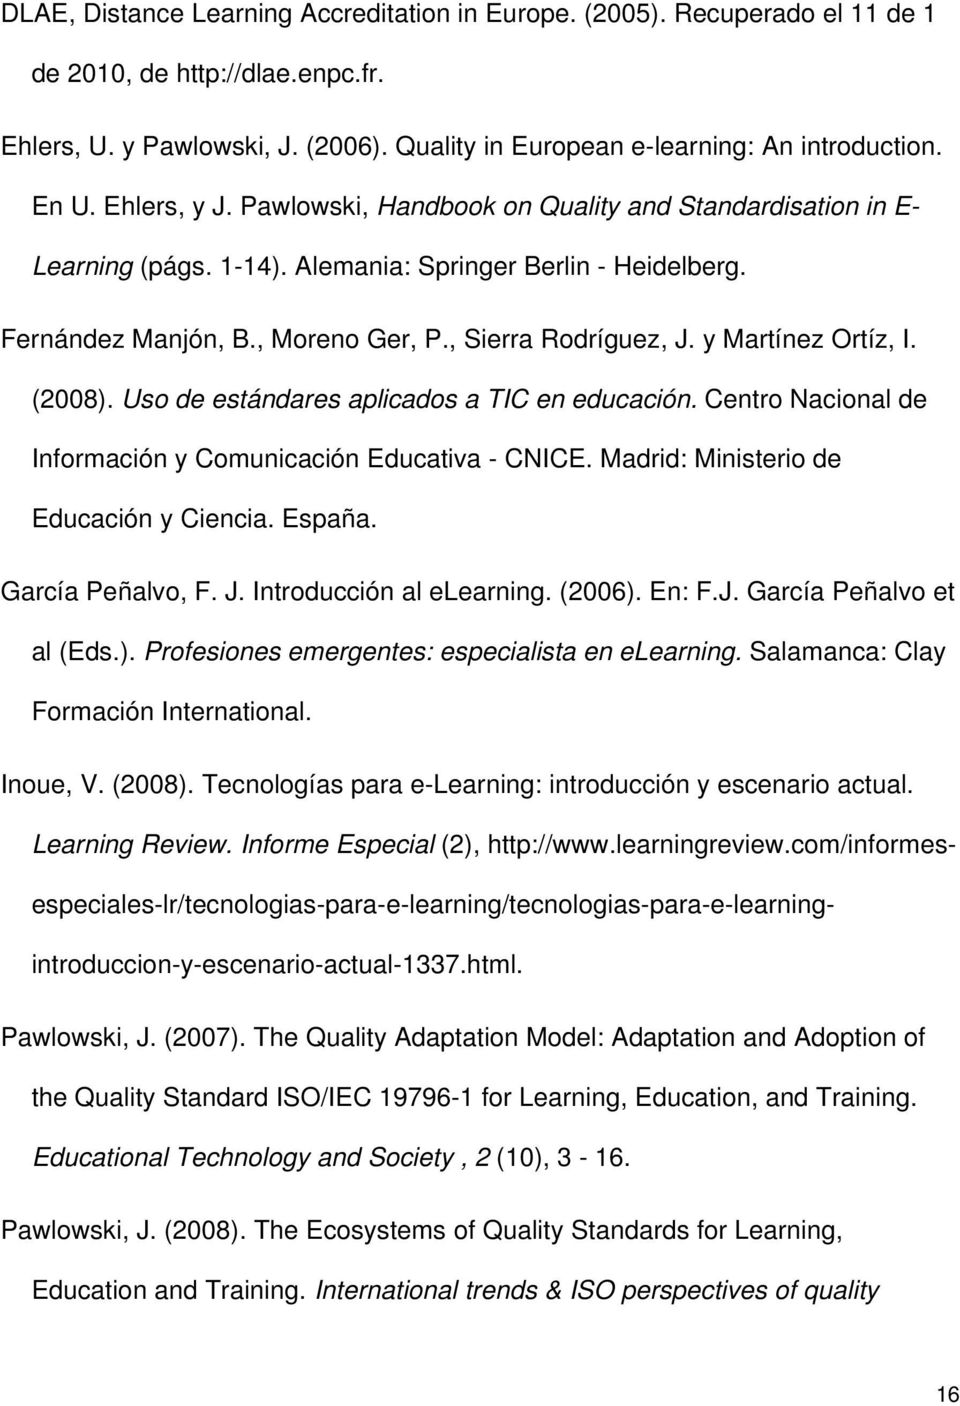 y Martínez Ortíz, I. (2008). Uso de estándares aplicados a TIC en educación. Centro Nacional de Información y Comunicación Educativa - CNICE. Madrid: Ministerio de Educación y Ciencia. España.